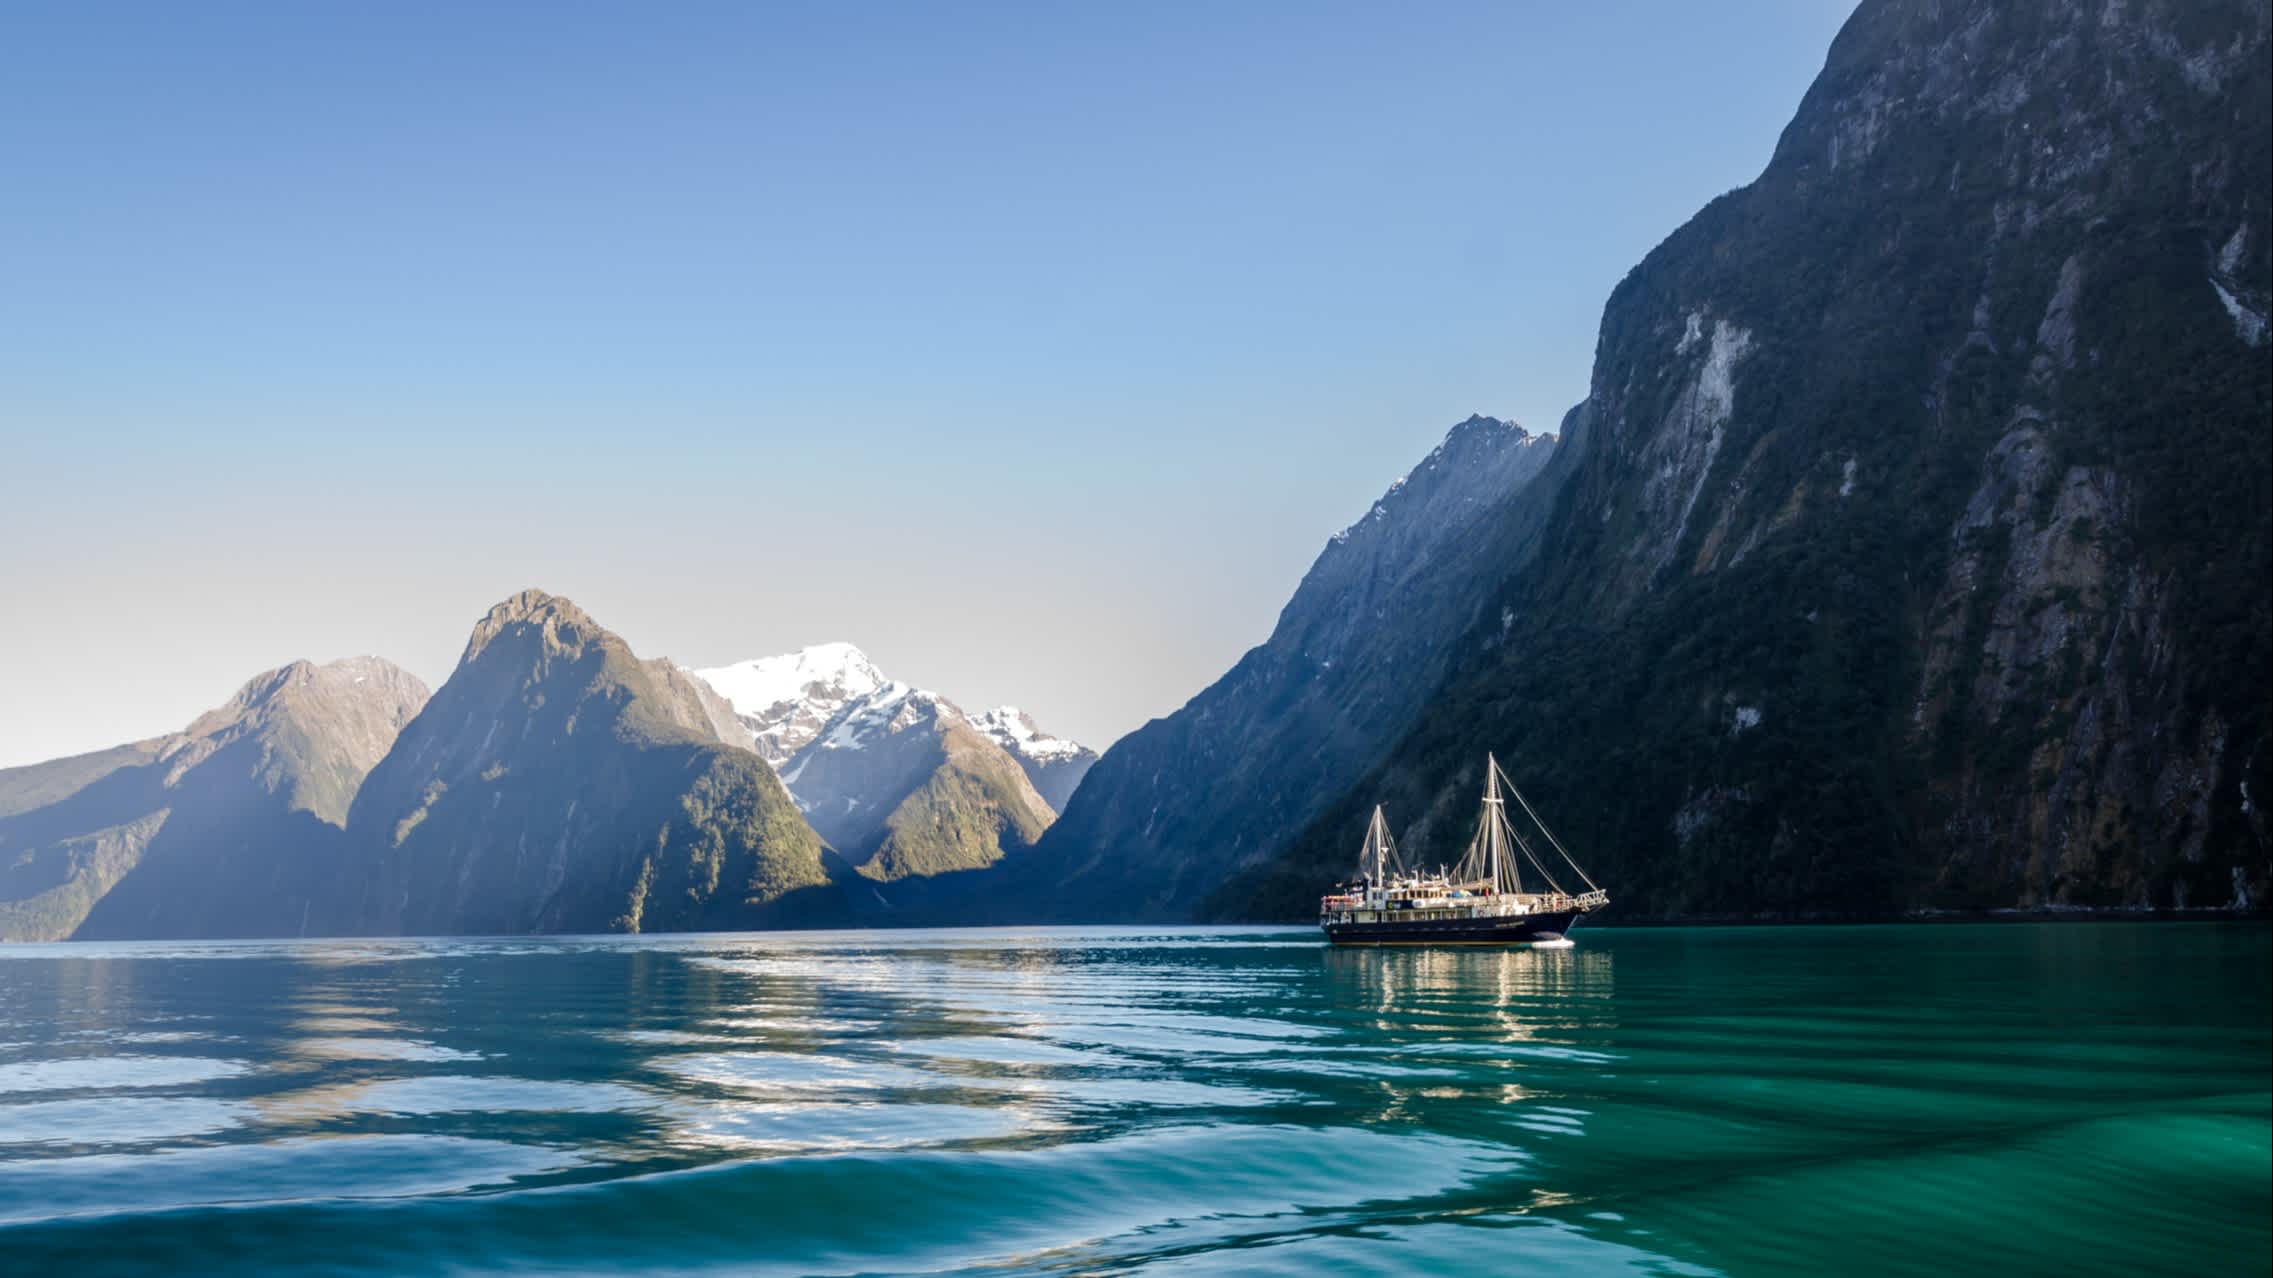 Le bateau de croisière sur le fjord de Milford Sound, Nouvelle-Zélande.

